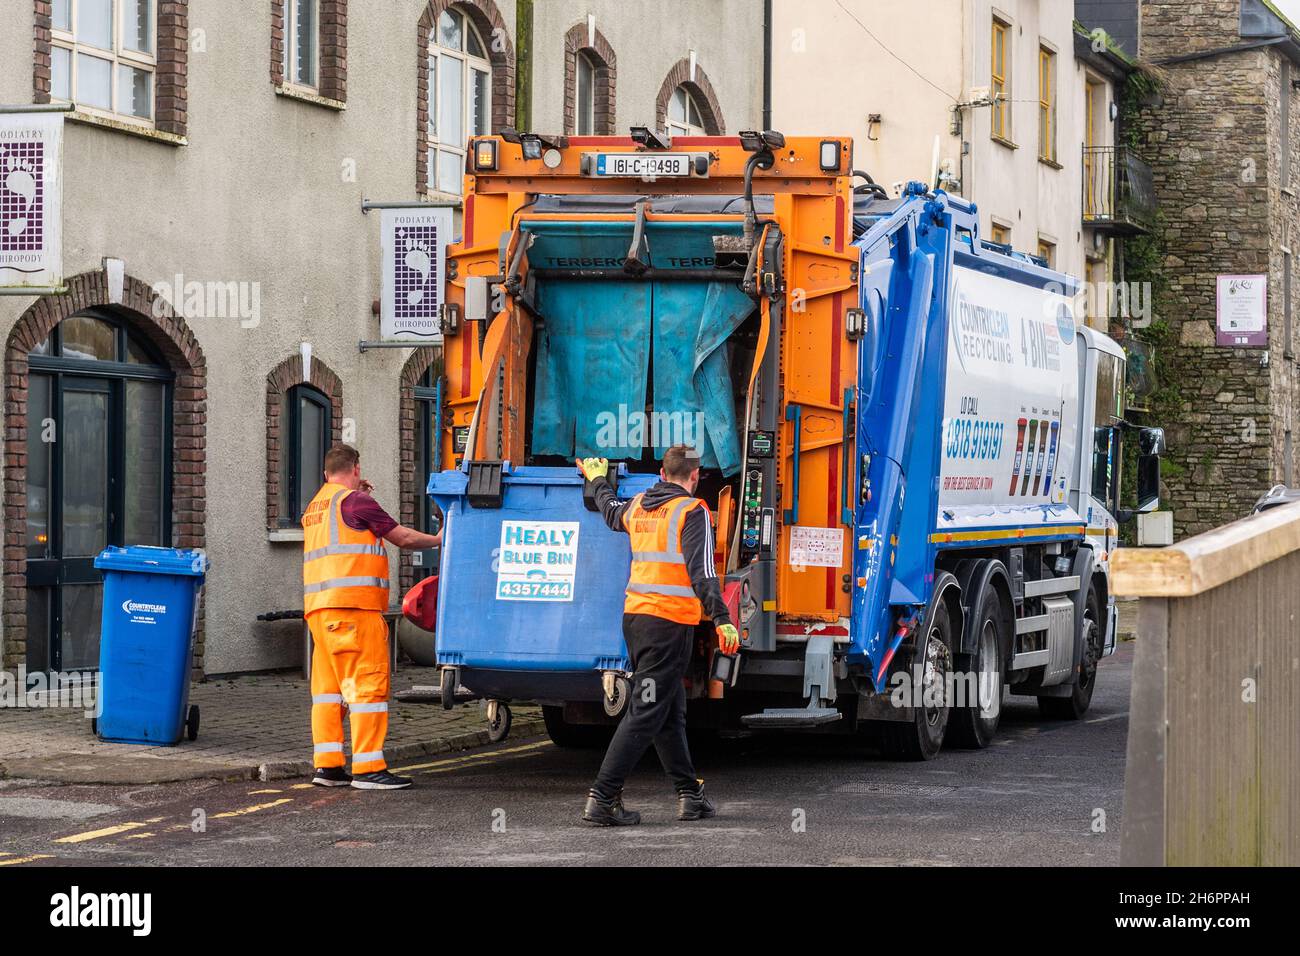 Bin men empty refuse into a bin lorry in Bandon, West Cork, Ireland. Stock Photo